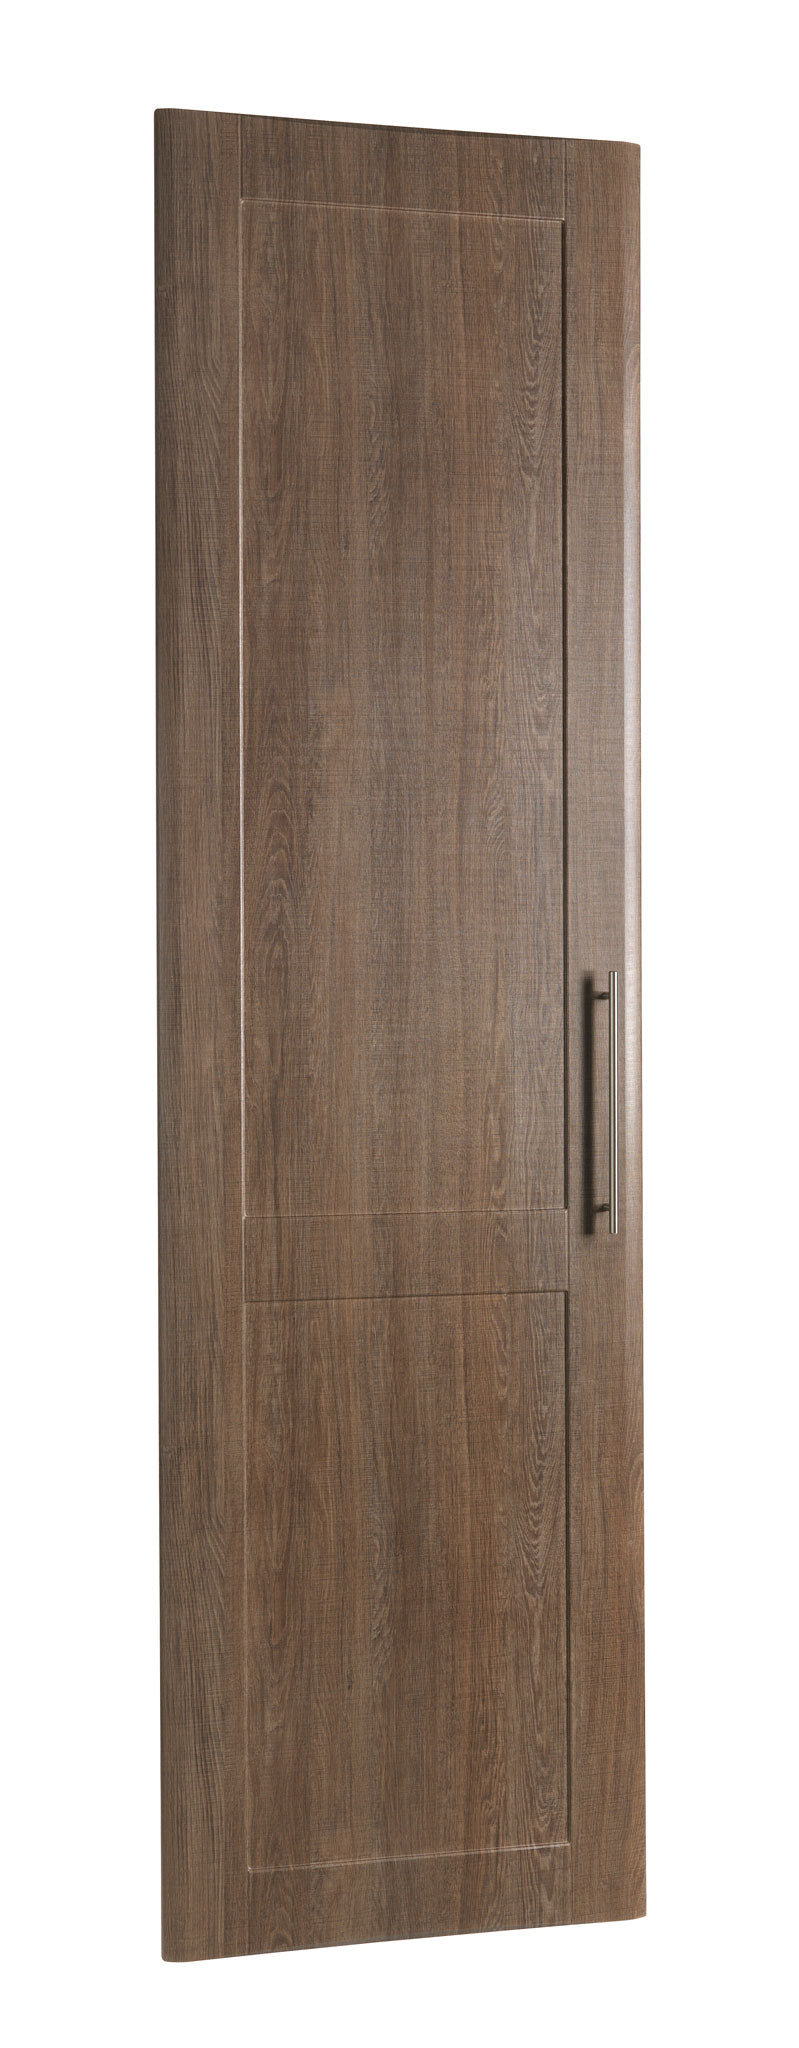 Denver style cupboard door in wood finish for bedroom